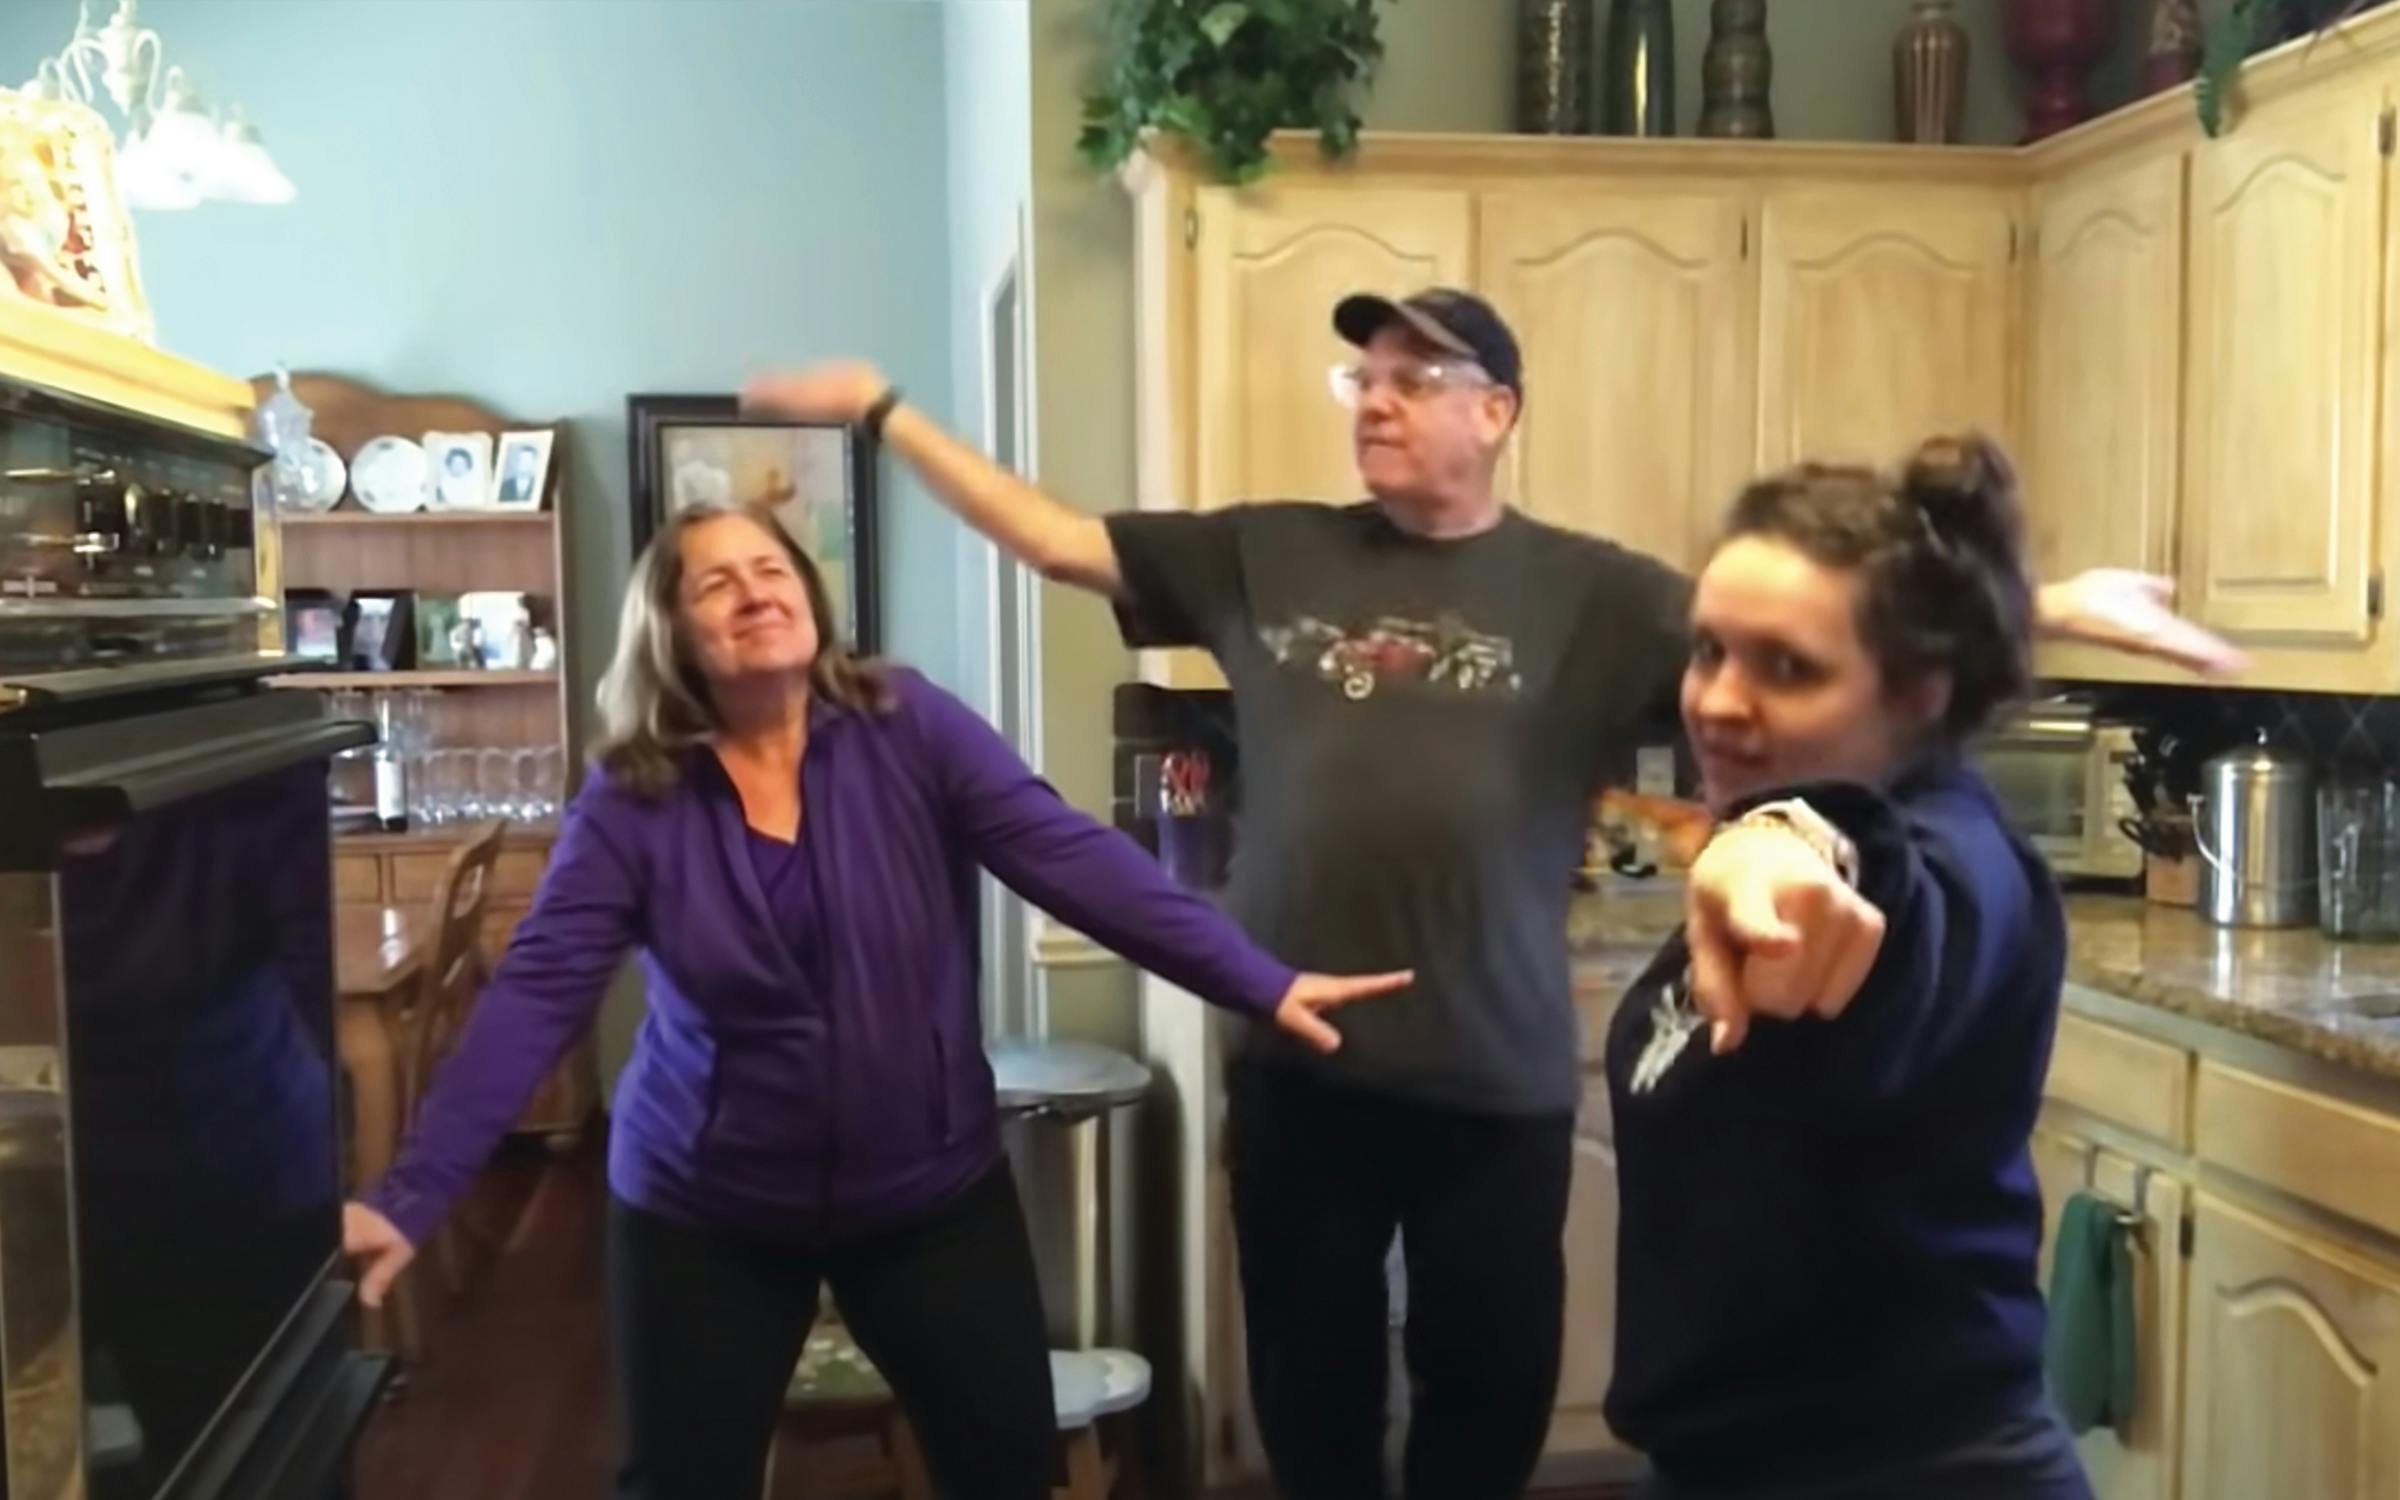 A Dallas family's viral dance video